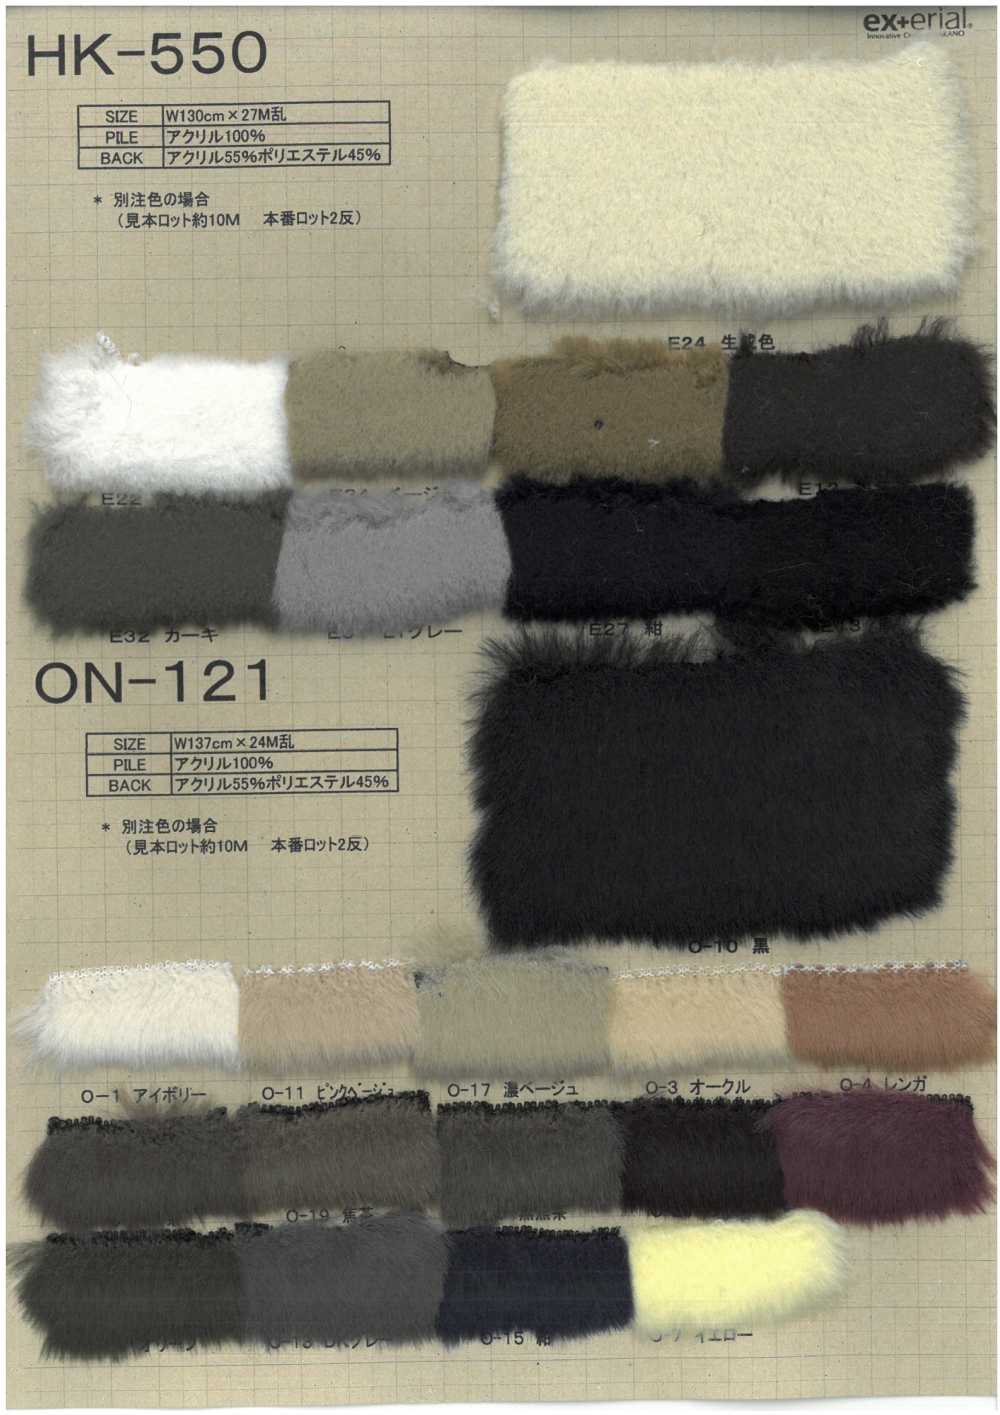 HK-550 Pelliccia Artigianale [Mouton][Tessile / Tessuto] Industria Delle Magliette A Nakano